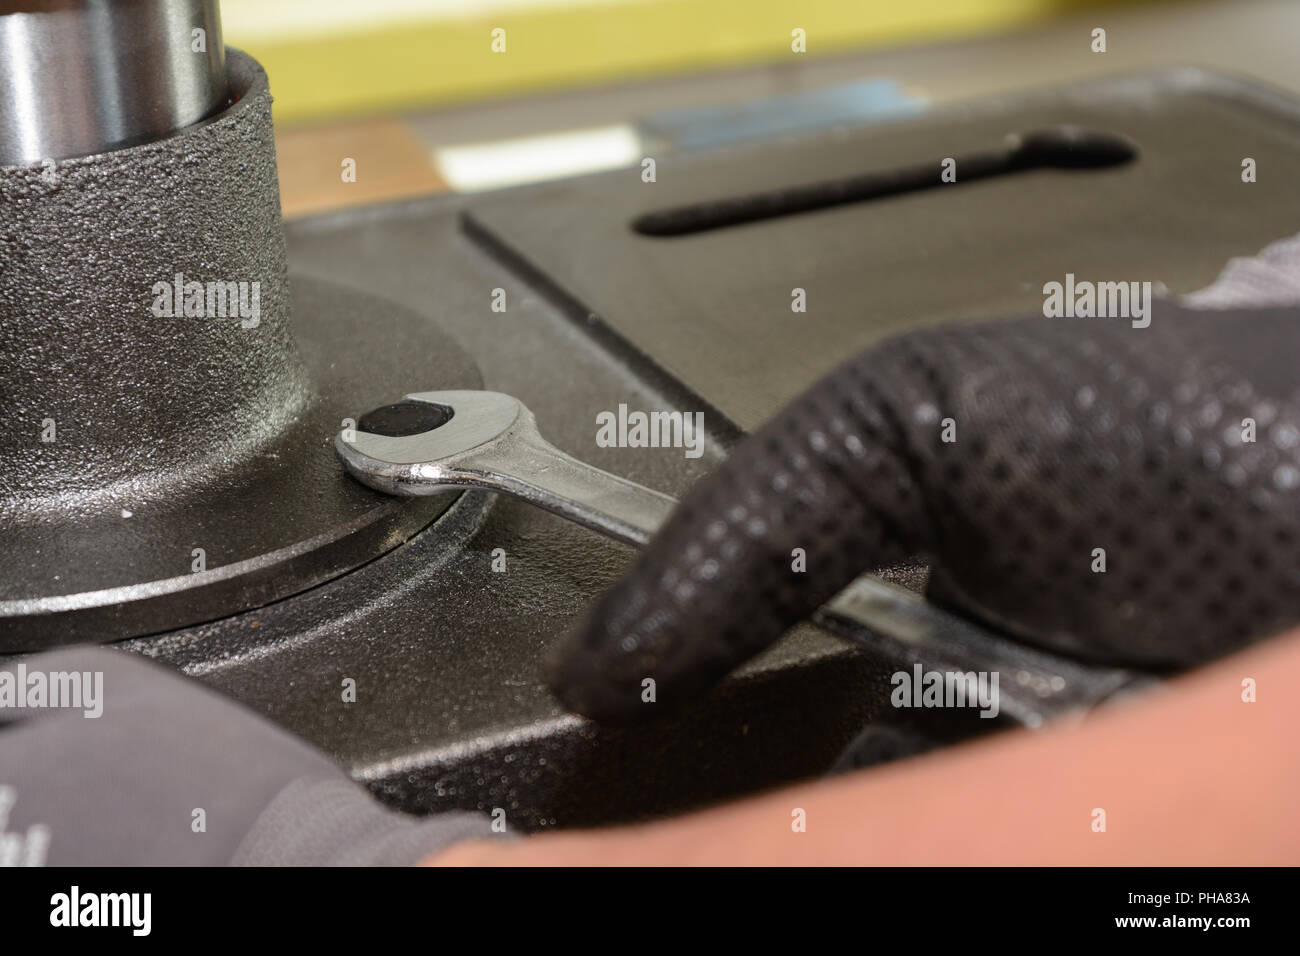 Artigiano tirando la vite di metallo con chiave - close-up Foto Stock